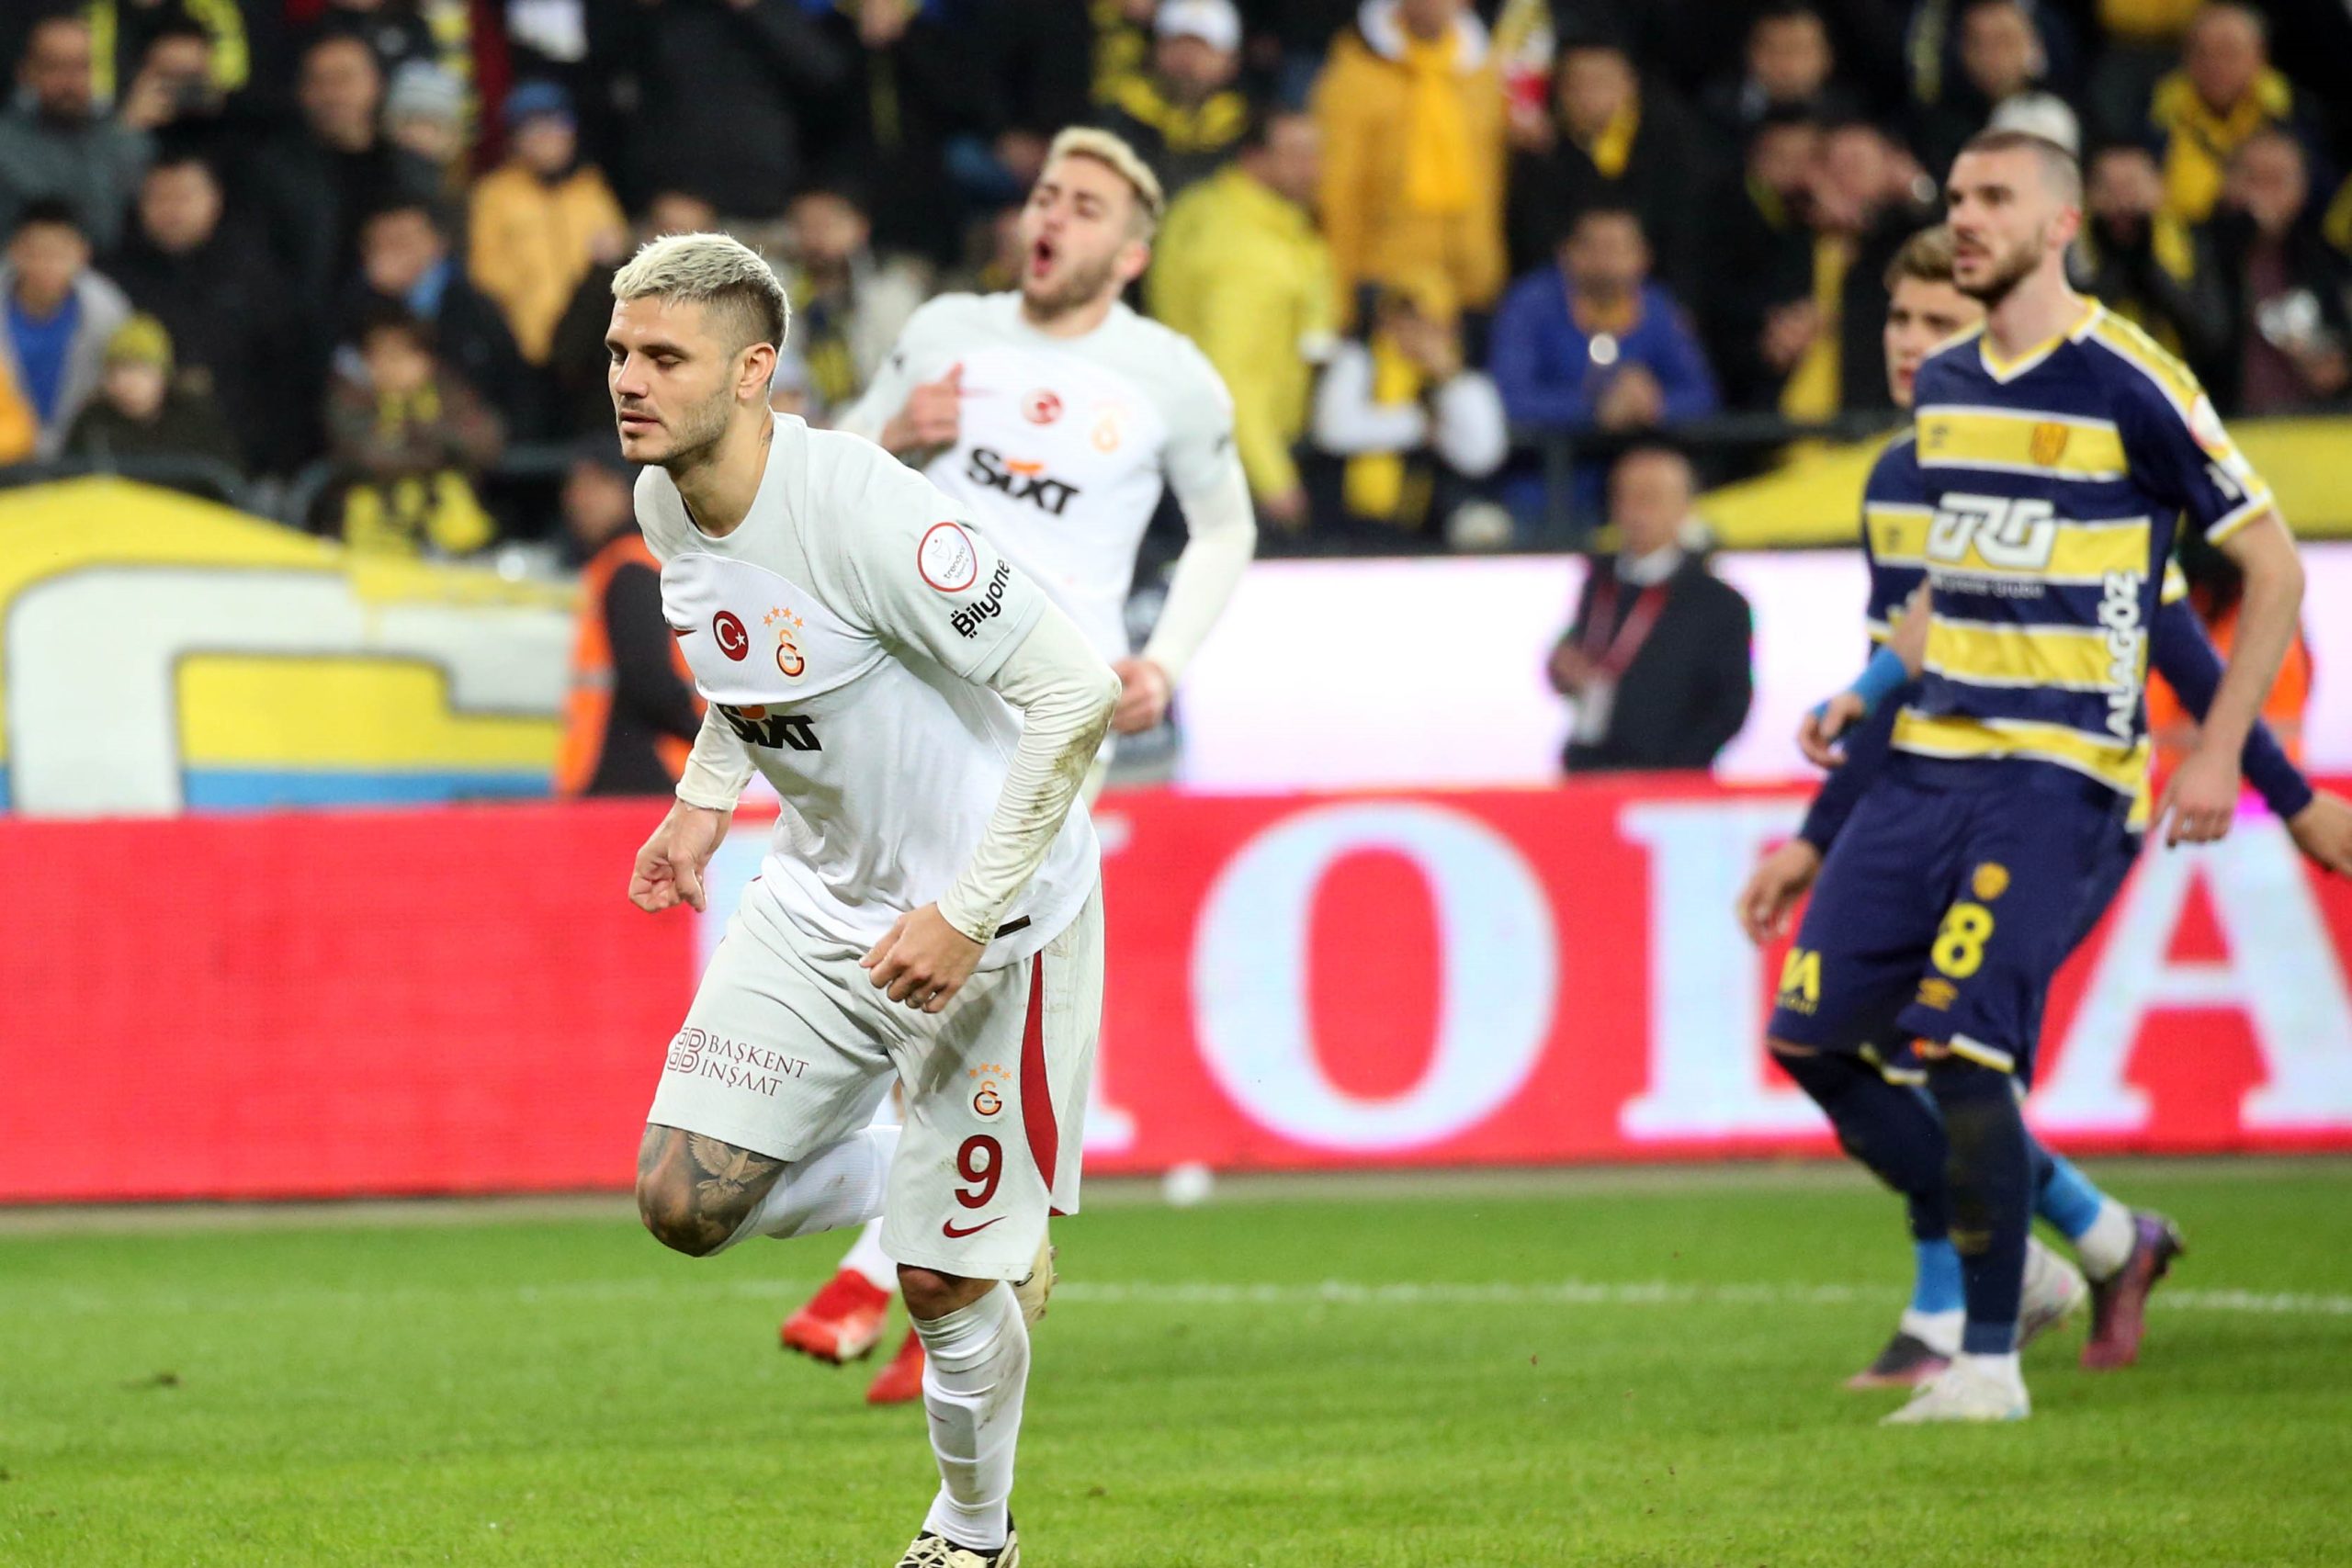 Eski hakemler Ankaragücü - Galatasaray maçını değerlendirdi: Penaltı kararı doğru muydu?